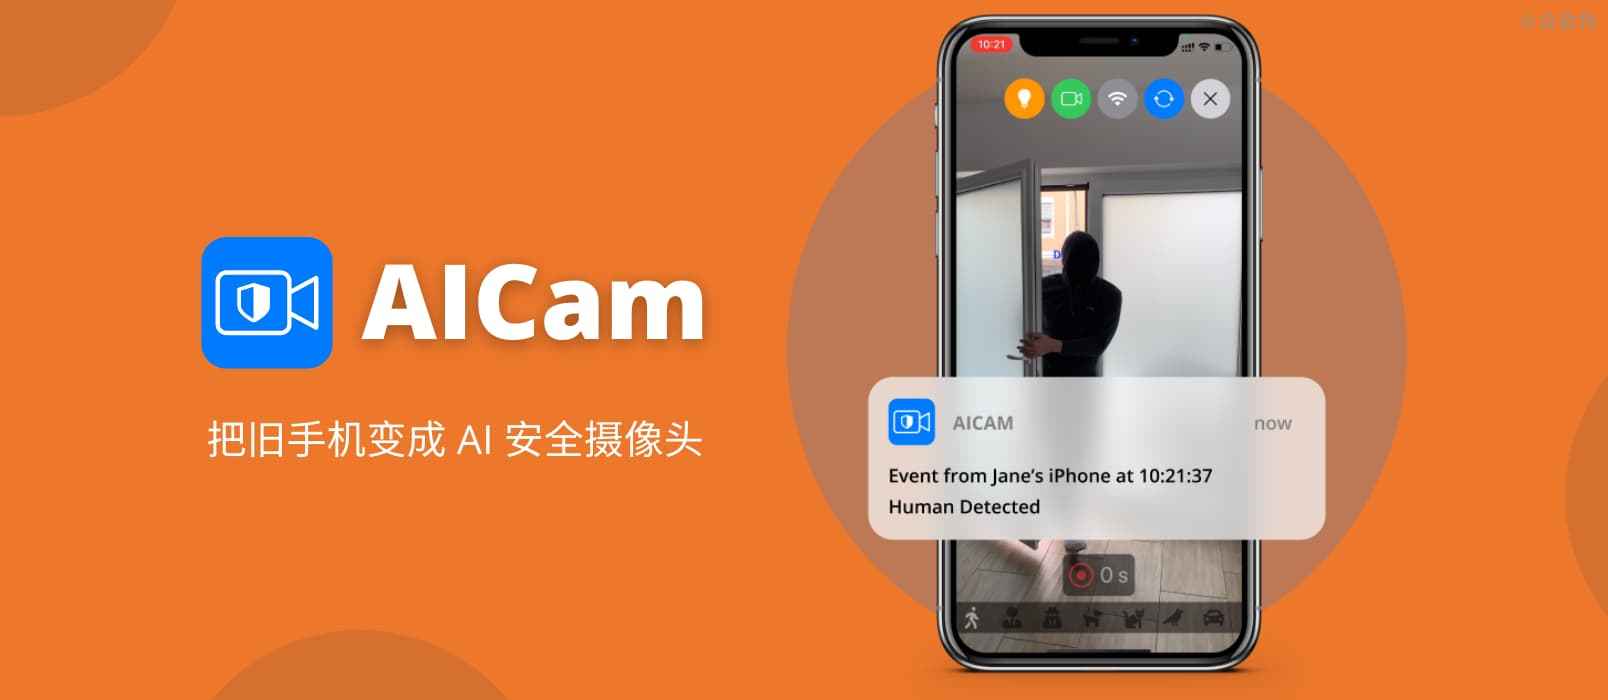 AiCam - AI 智能监控，用旧 iPhone 实现人脸检测、宠物识别（猫、狗、鸟）、车辆识别